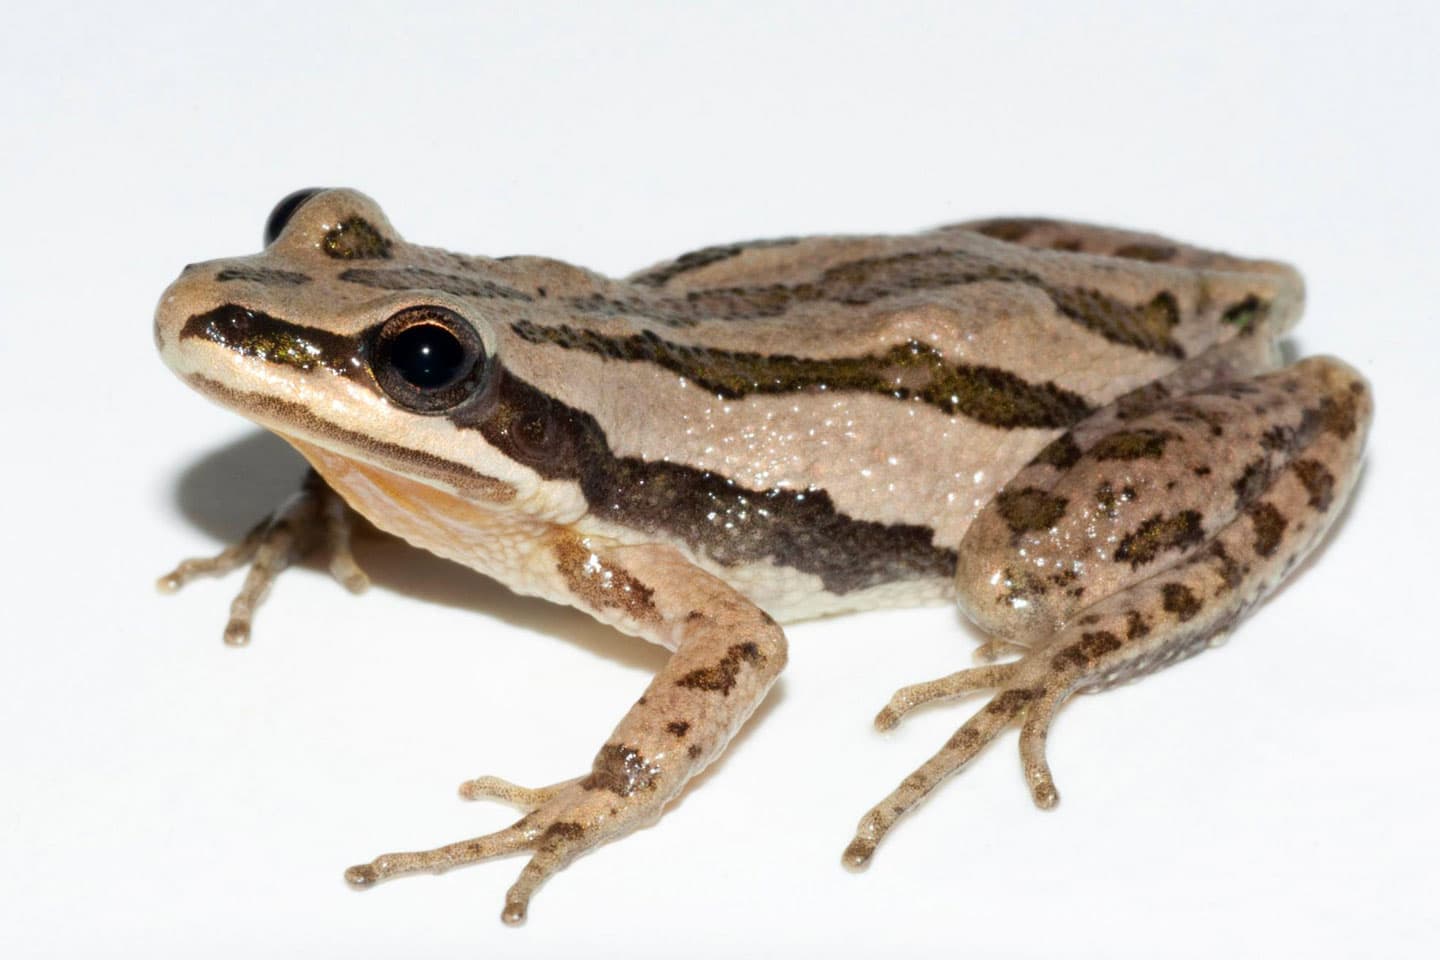 Close-up of a Boreal Chorus Frog